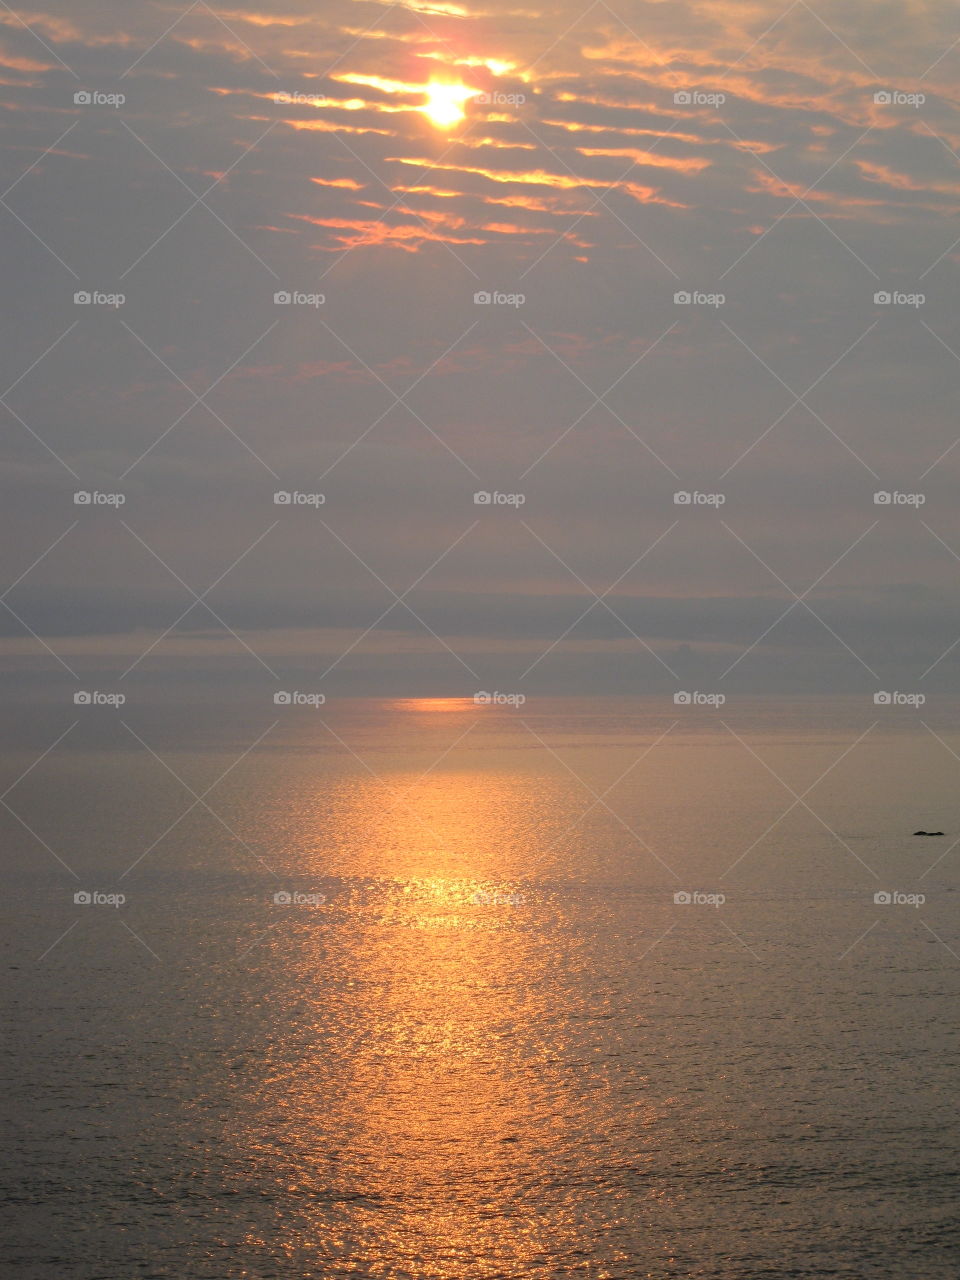 Stunning Sunset on the Ocean "Orange Paradise"